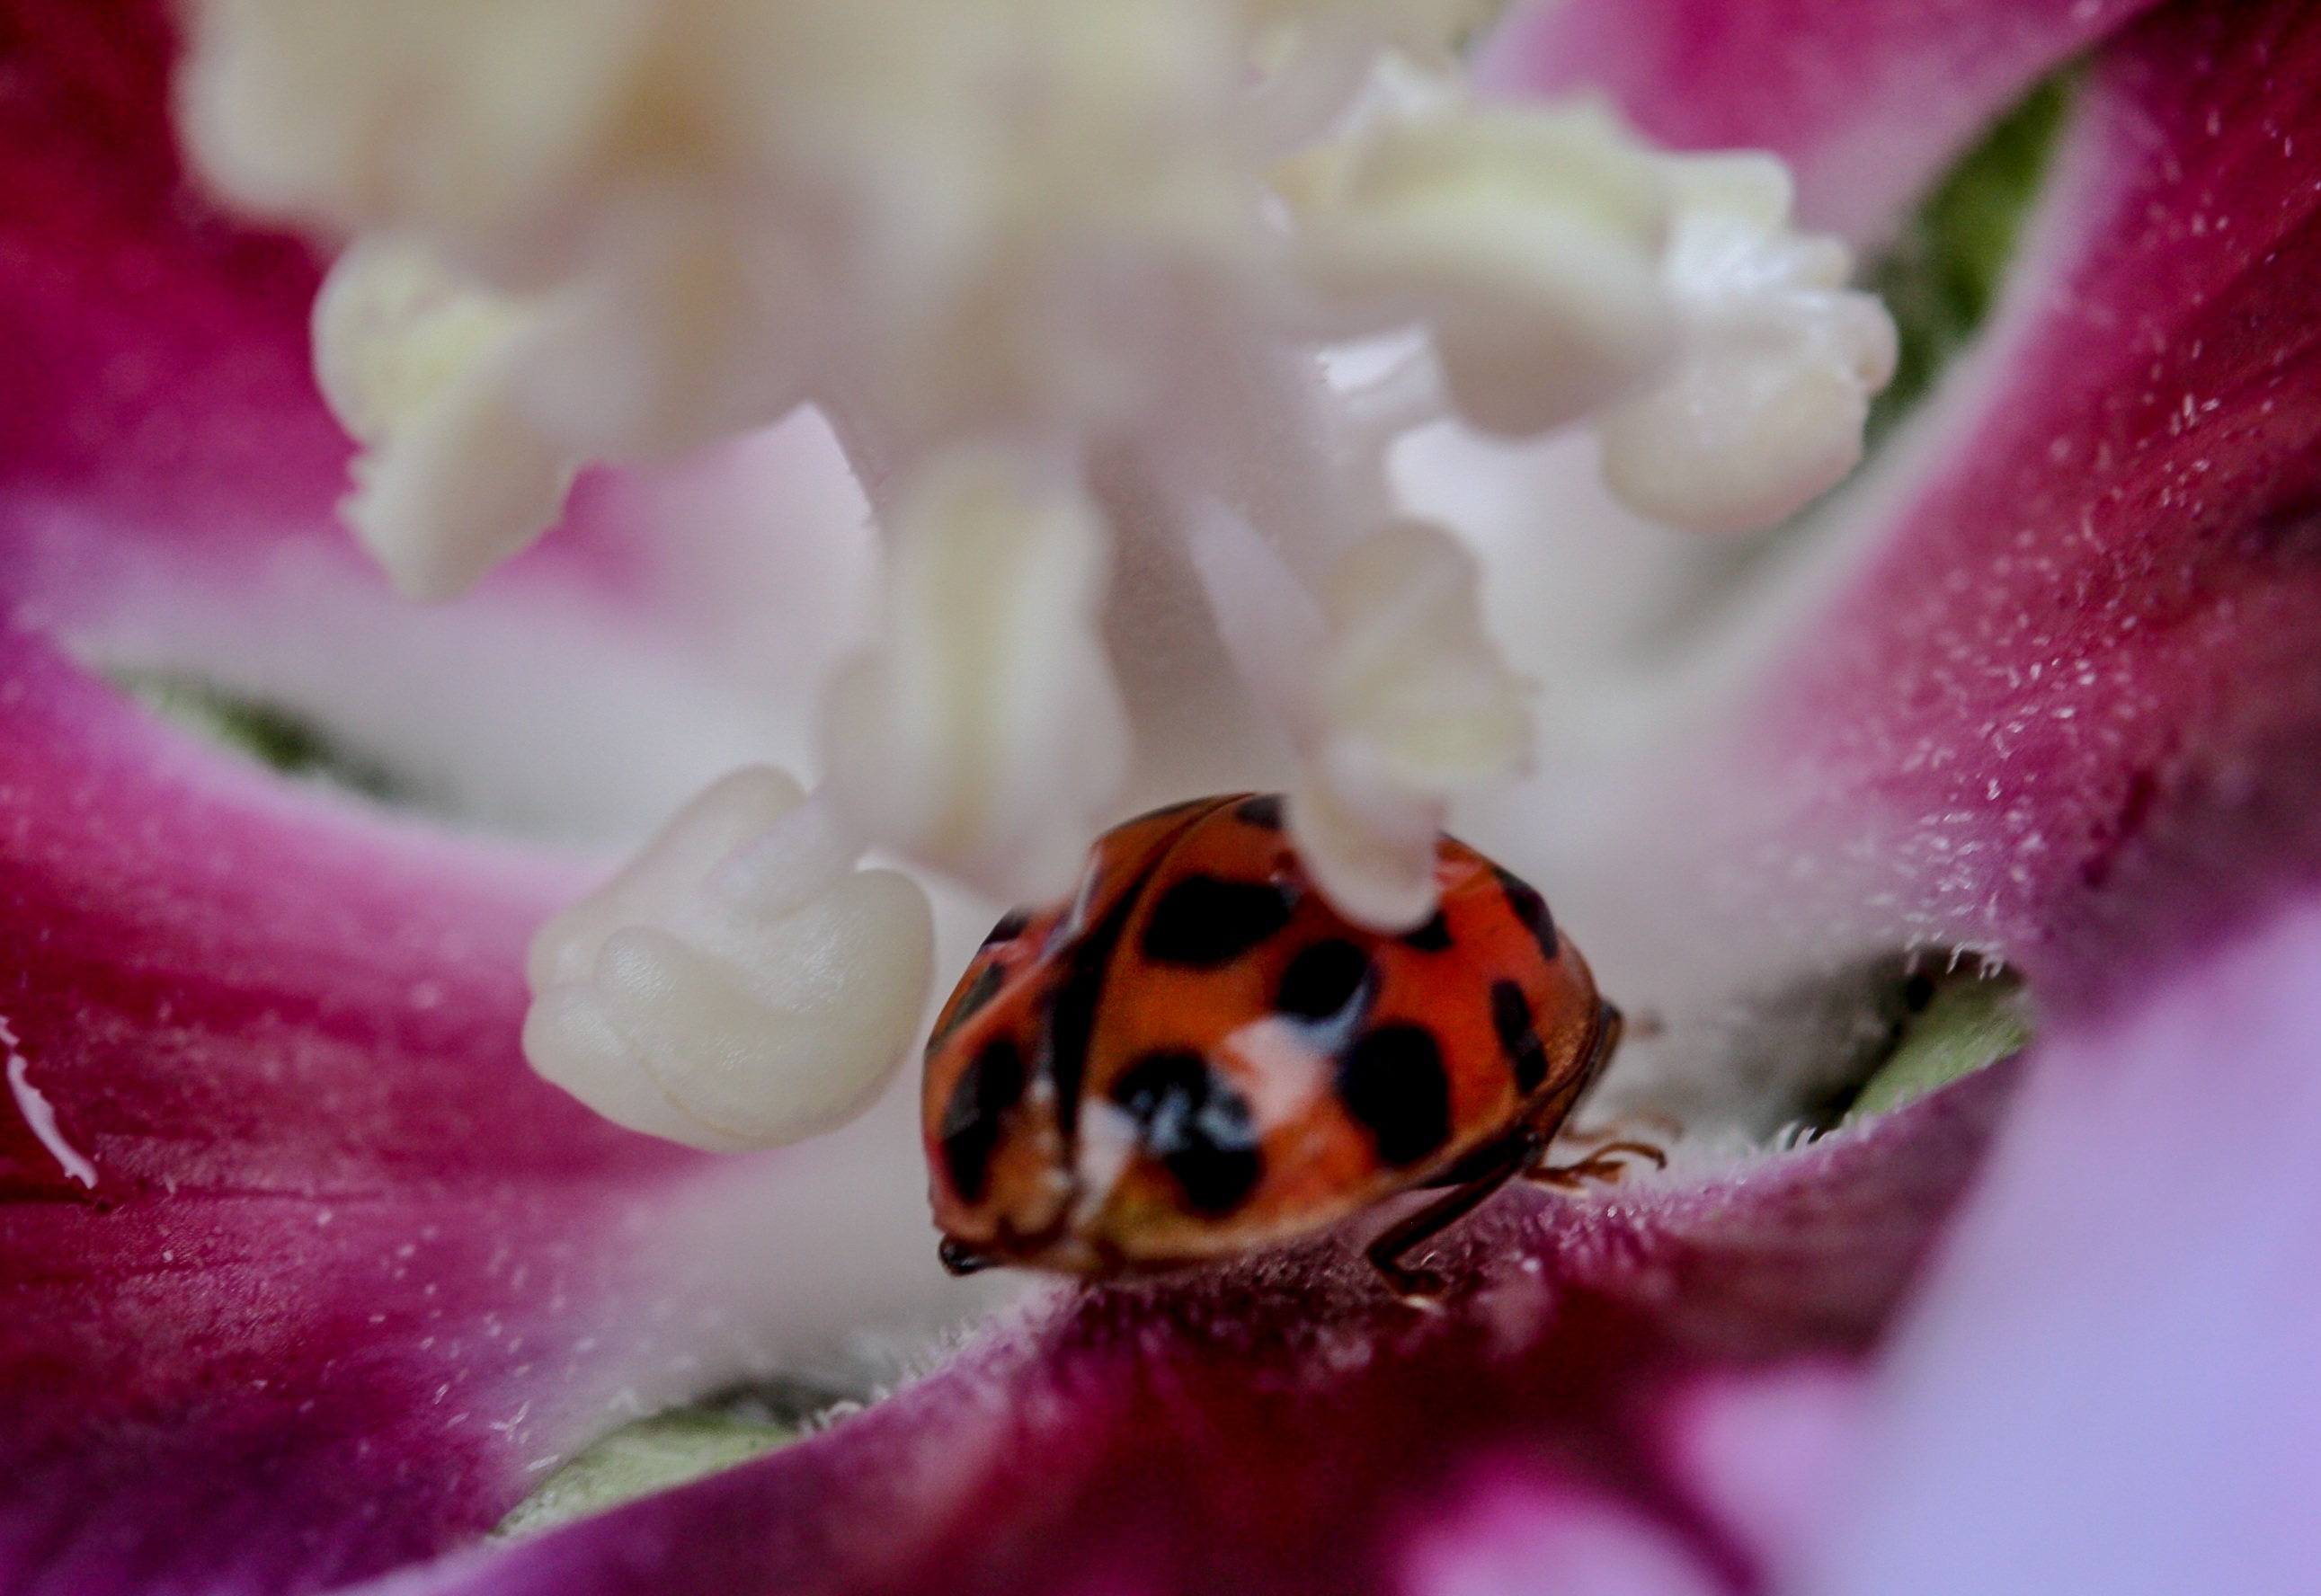 Ladybug on the flower photo